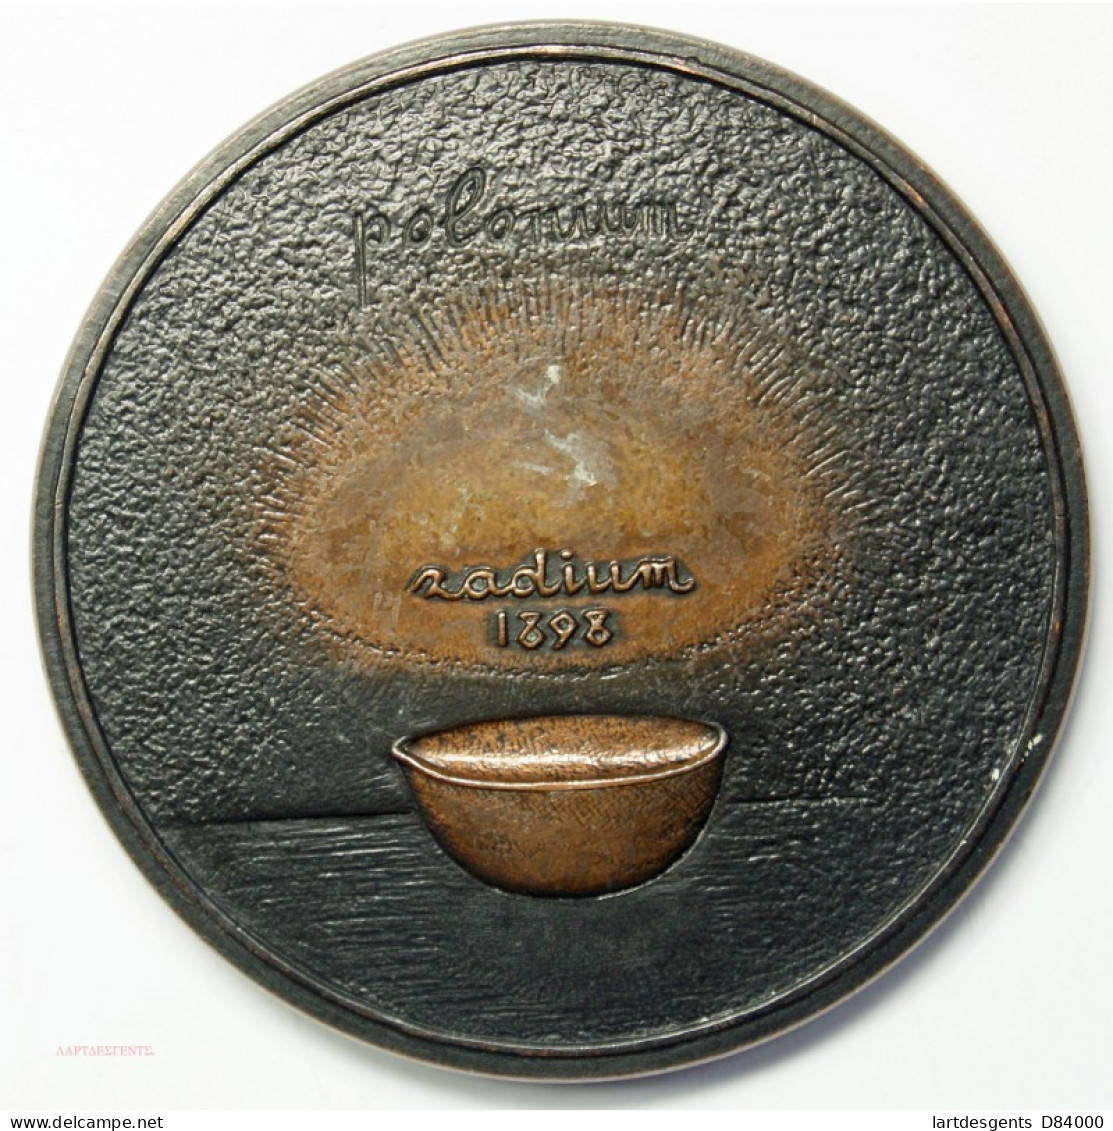 Médaille MARIE CURIE 1967 (Polonium Radium 1898)  Par J.H COËFFIN, Lartdesgents.fr - Royaux / De Noblesse